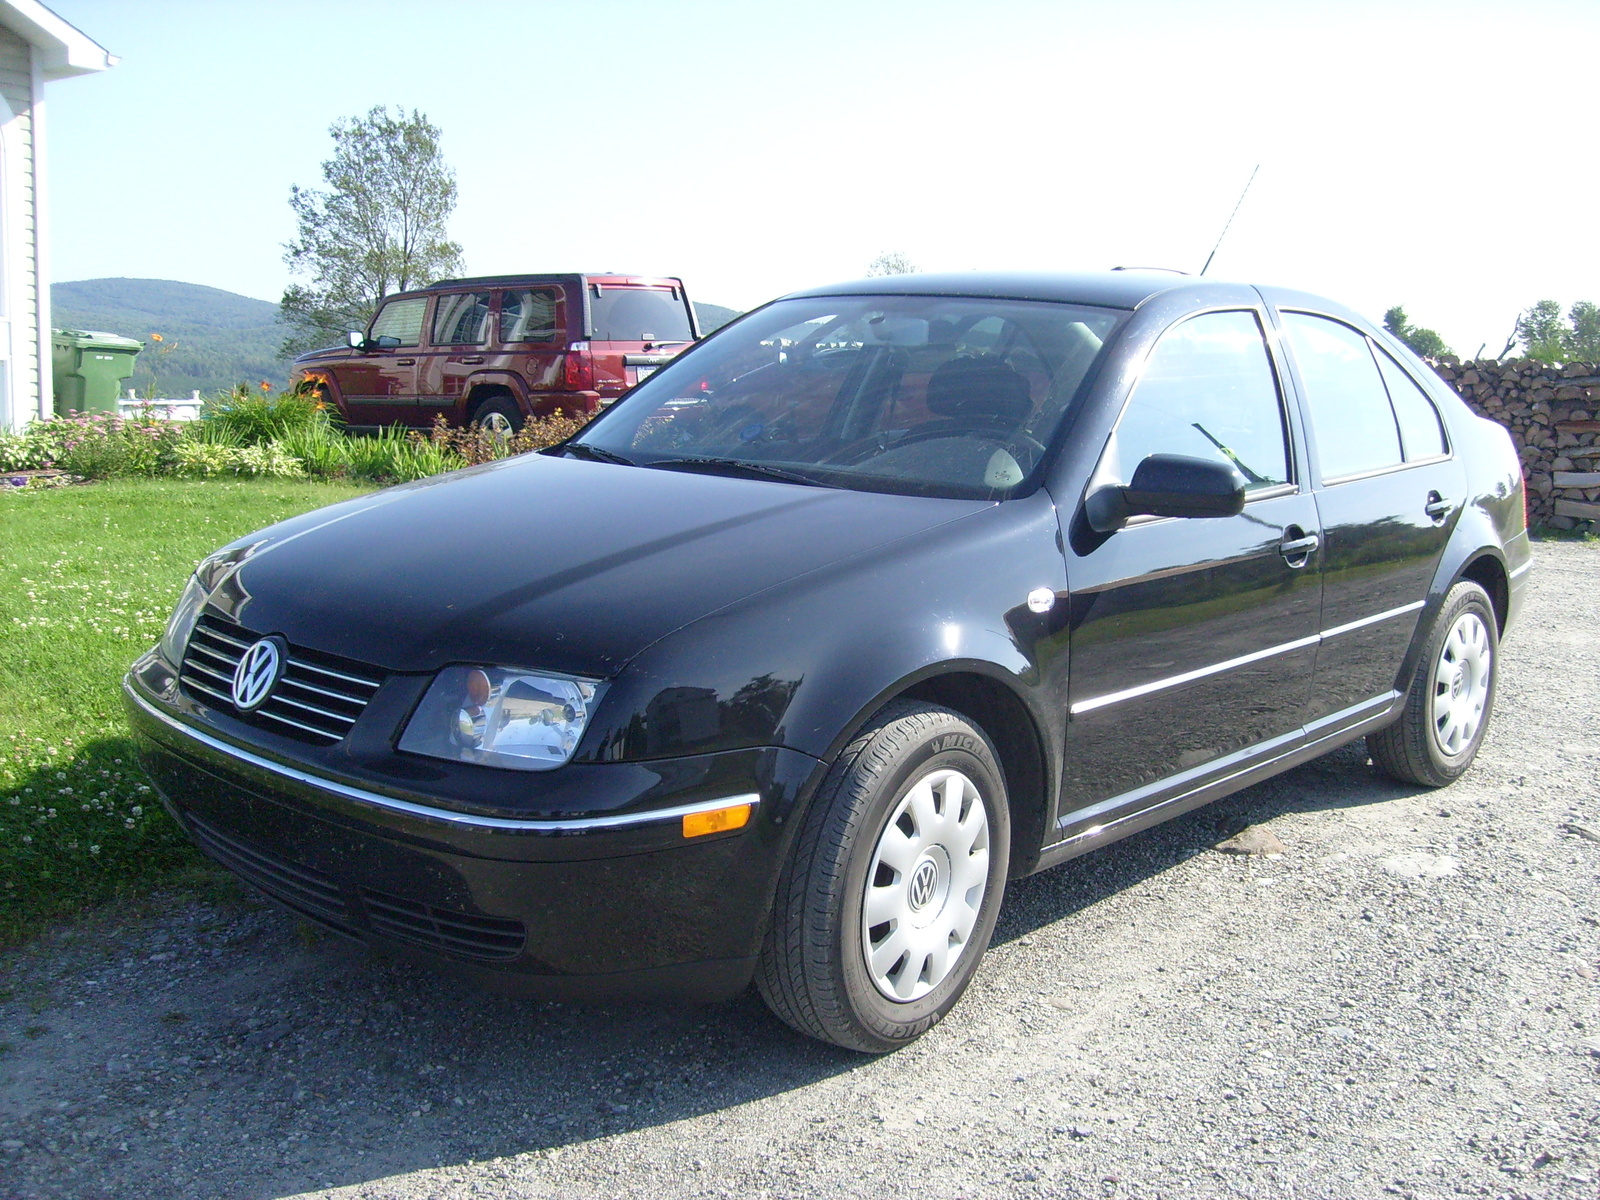 1999 Volkswagen Jetta Exterior Pictures CarGurus